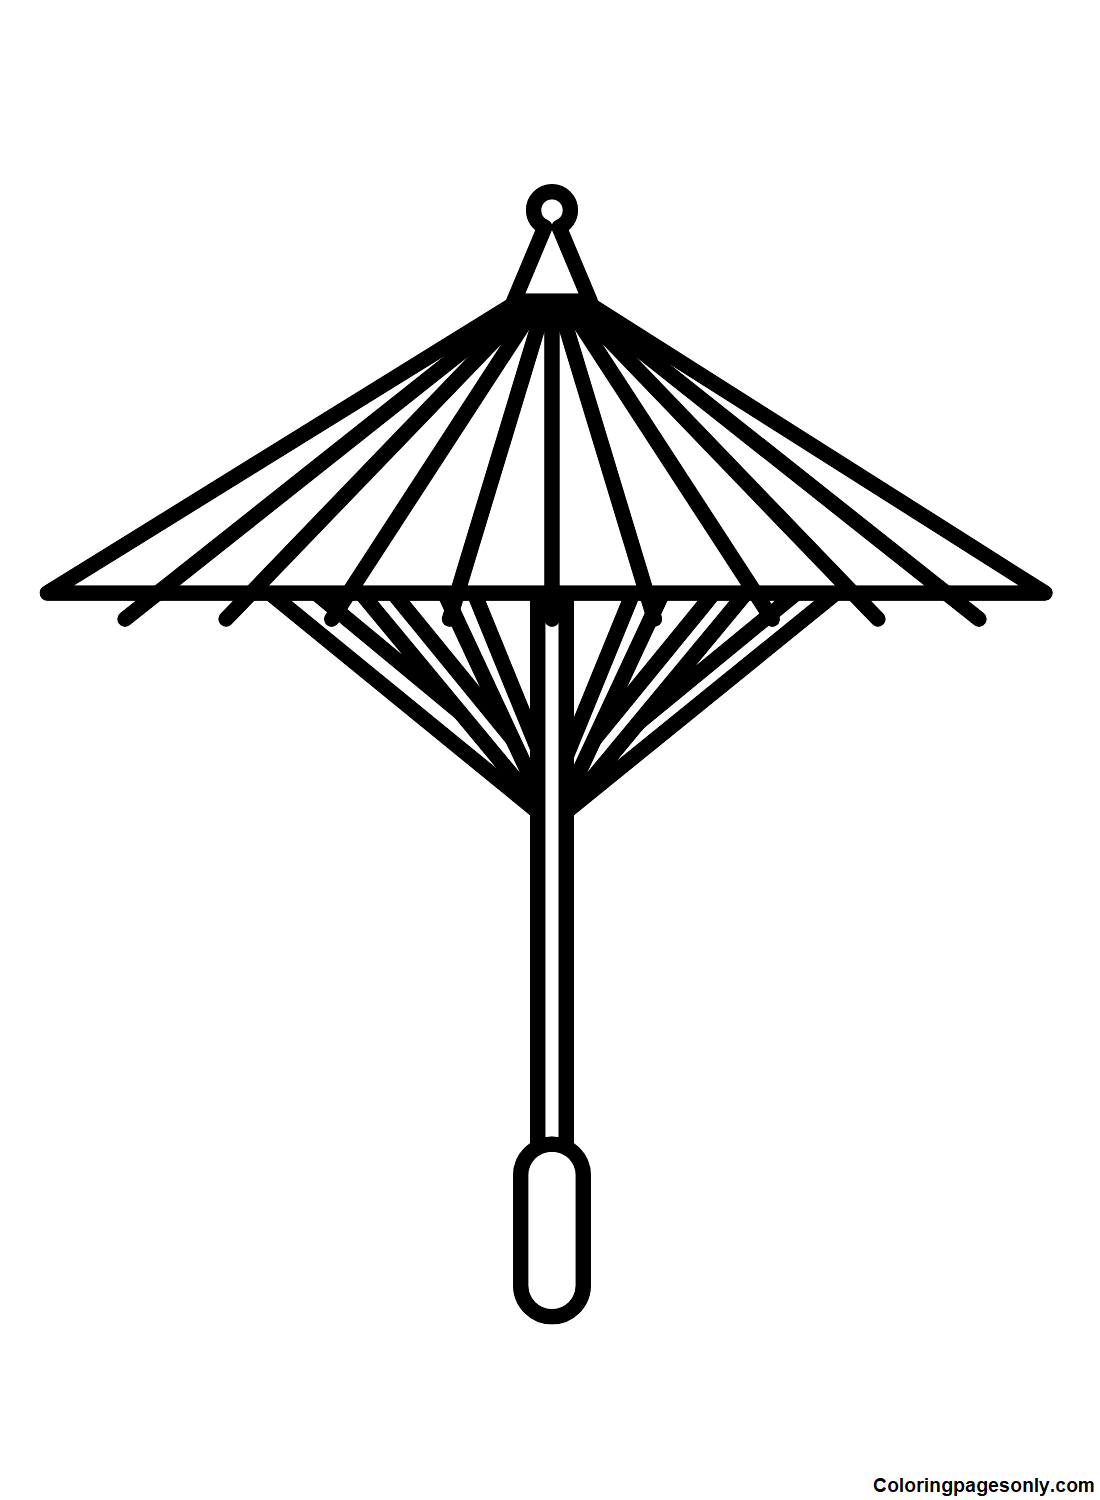 Зонт для печати из зонтика